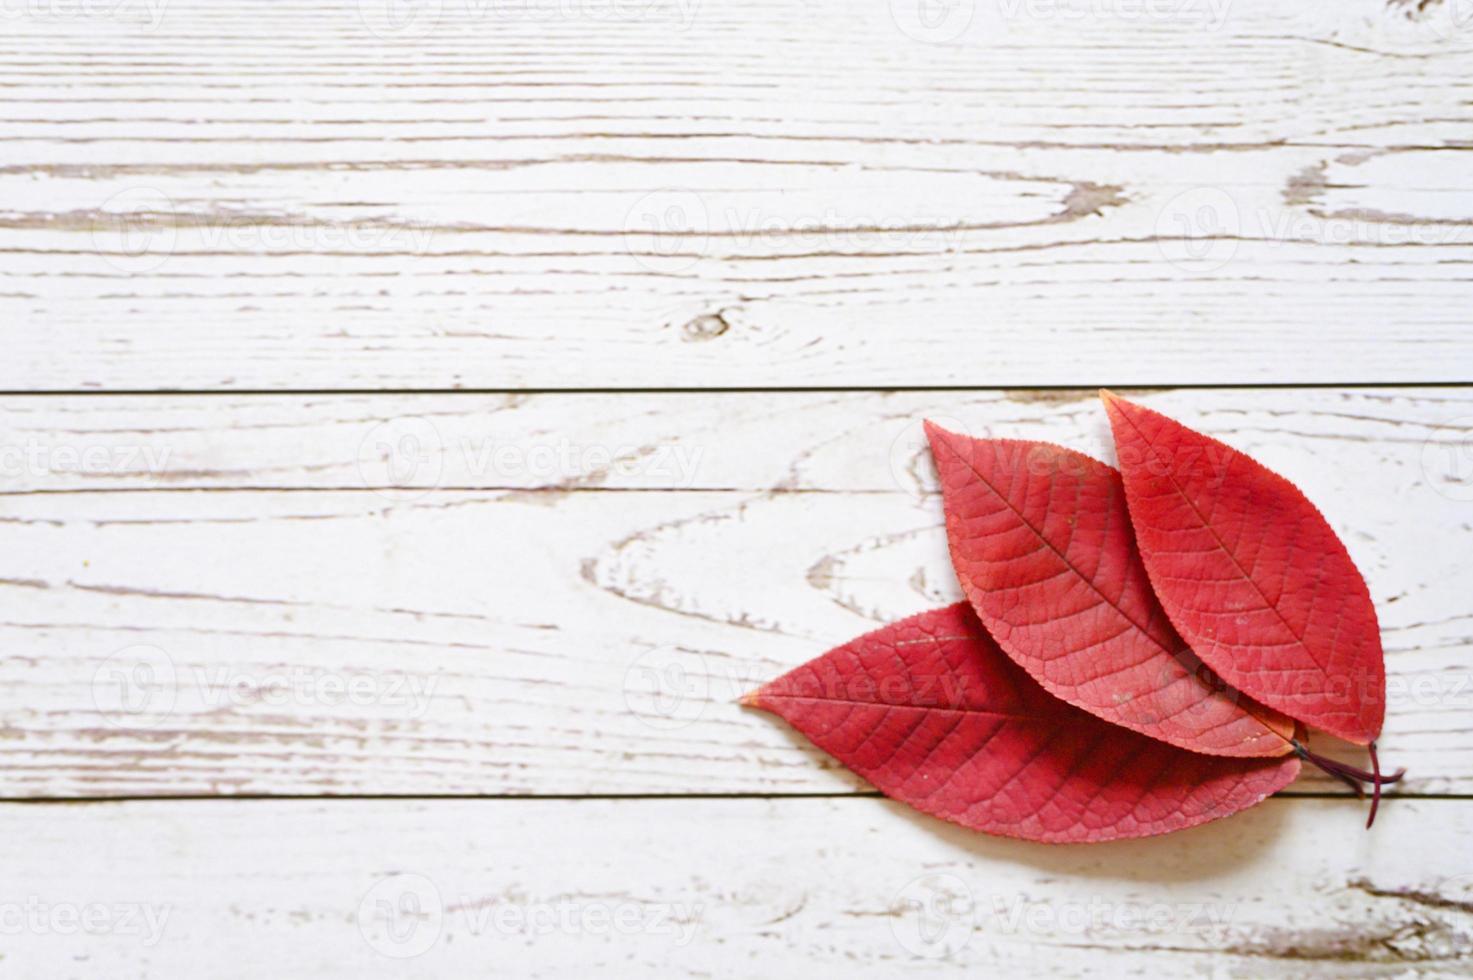 verschillende rode herfst gevallen bladeren op een lichte houten plank achtergrond foto